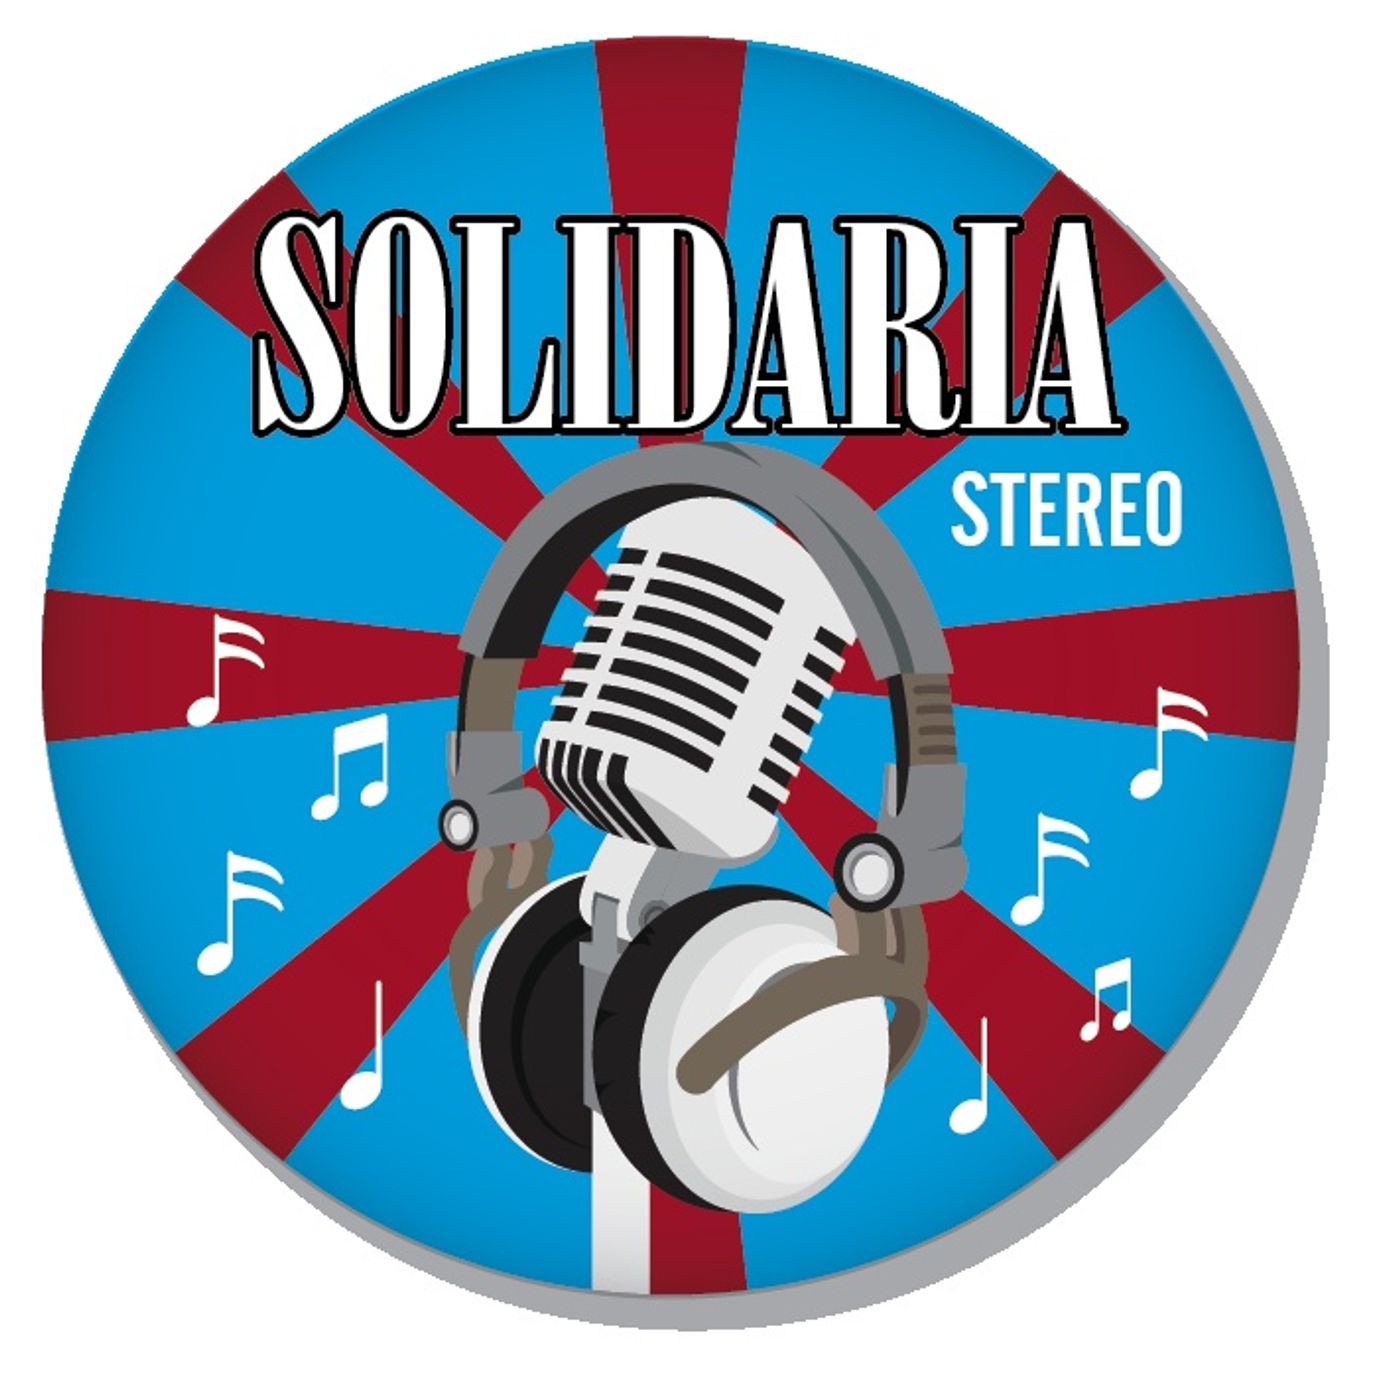 Solidaria Stereo